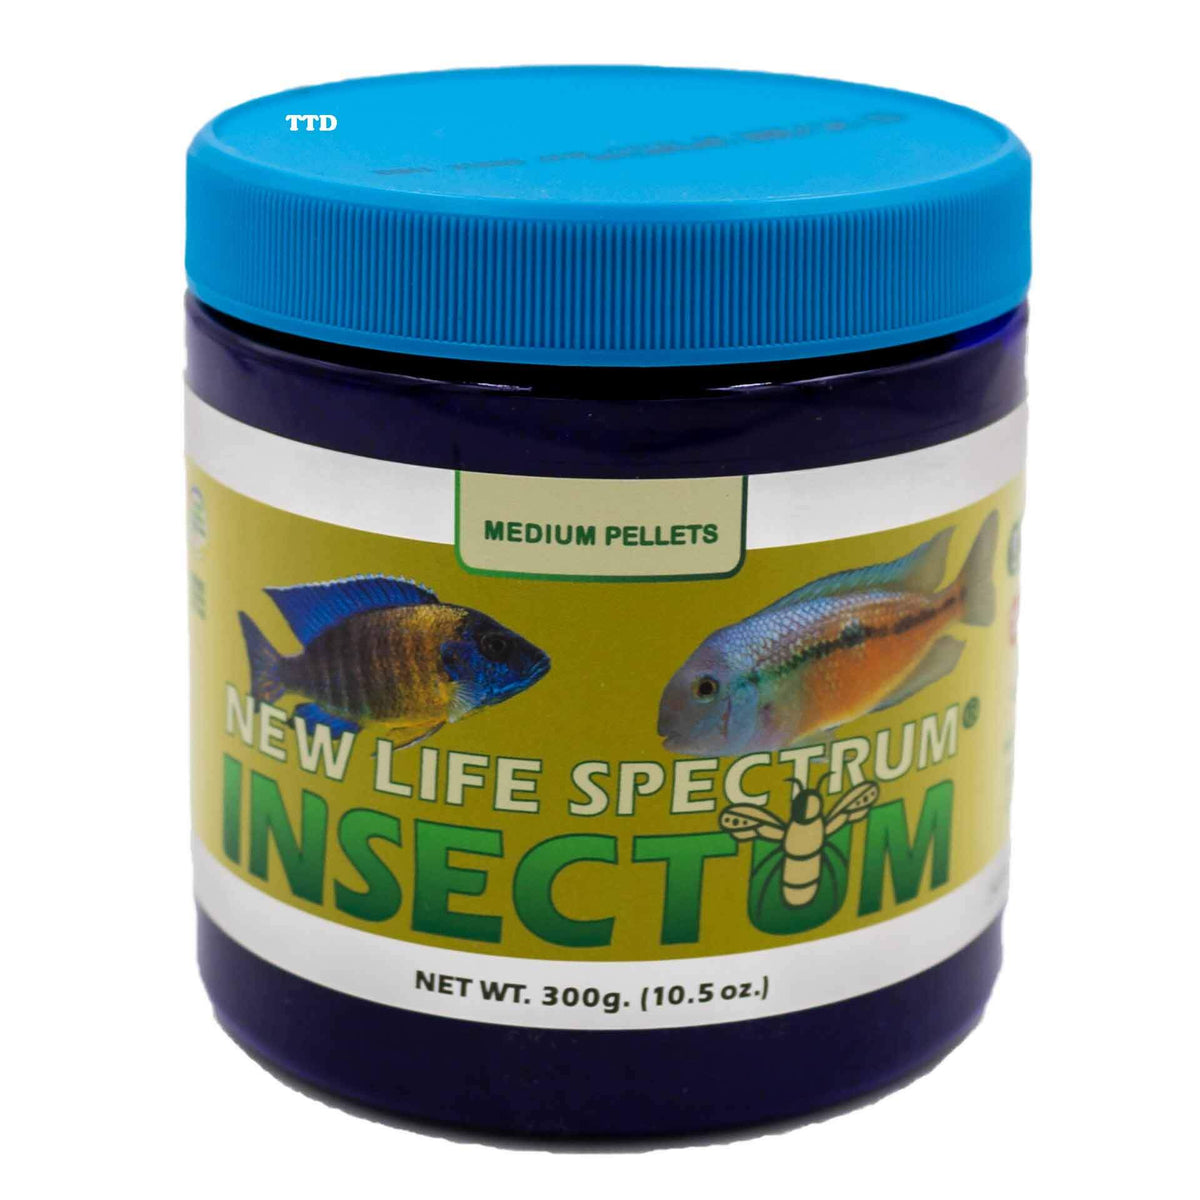 New Life Spectrum Insectum Medium 300g - Sinking Pellet 2-2.5mm